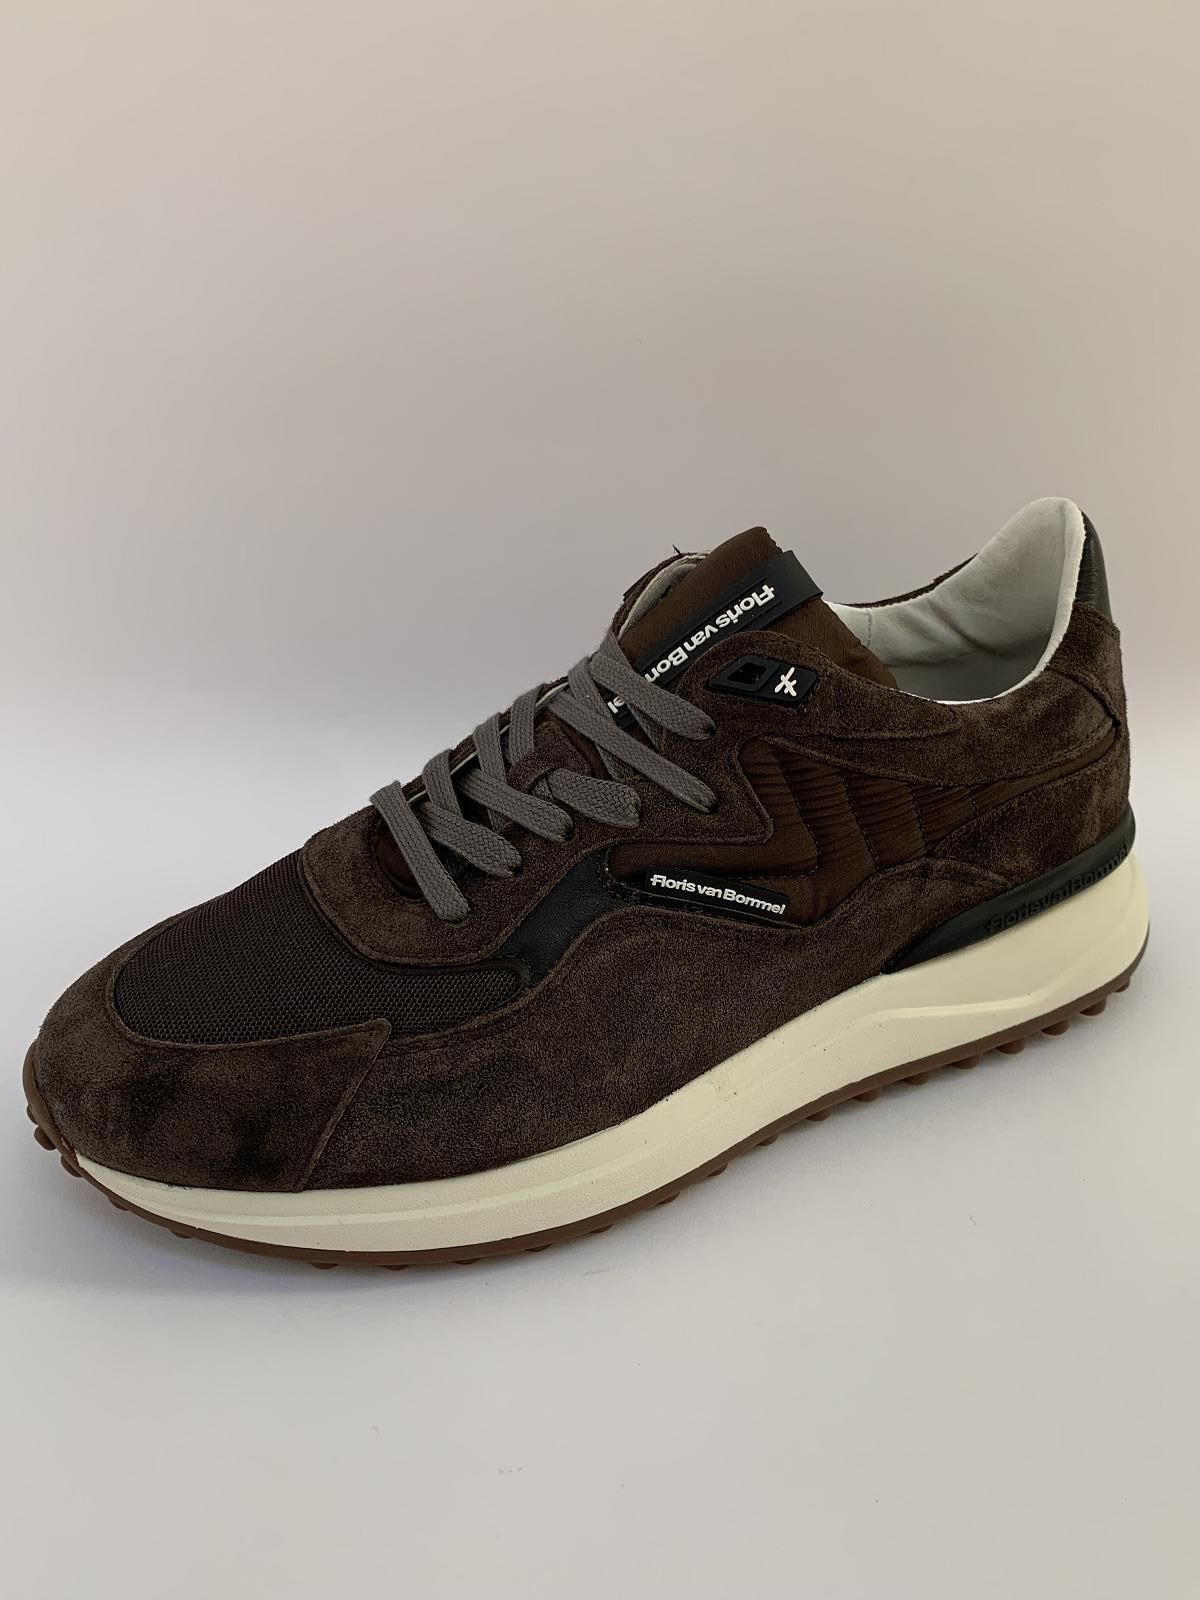 Van Bommel Sneaker Bruin heren (Sneaker Noppi Choco - 10152-20-01) - Schoenen Luca